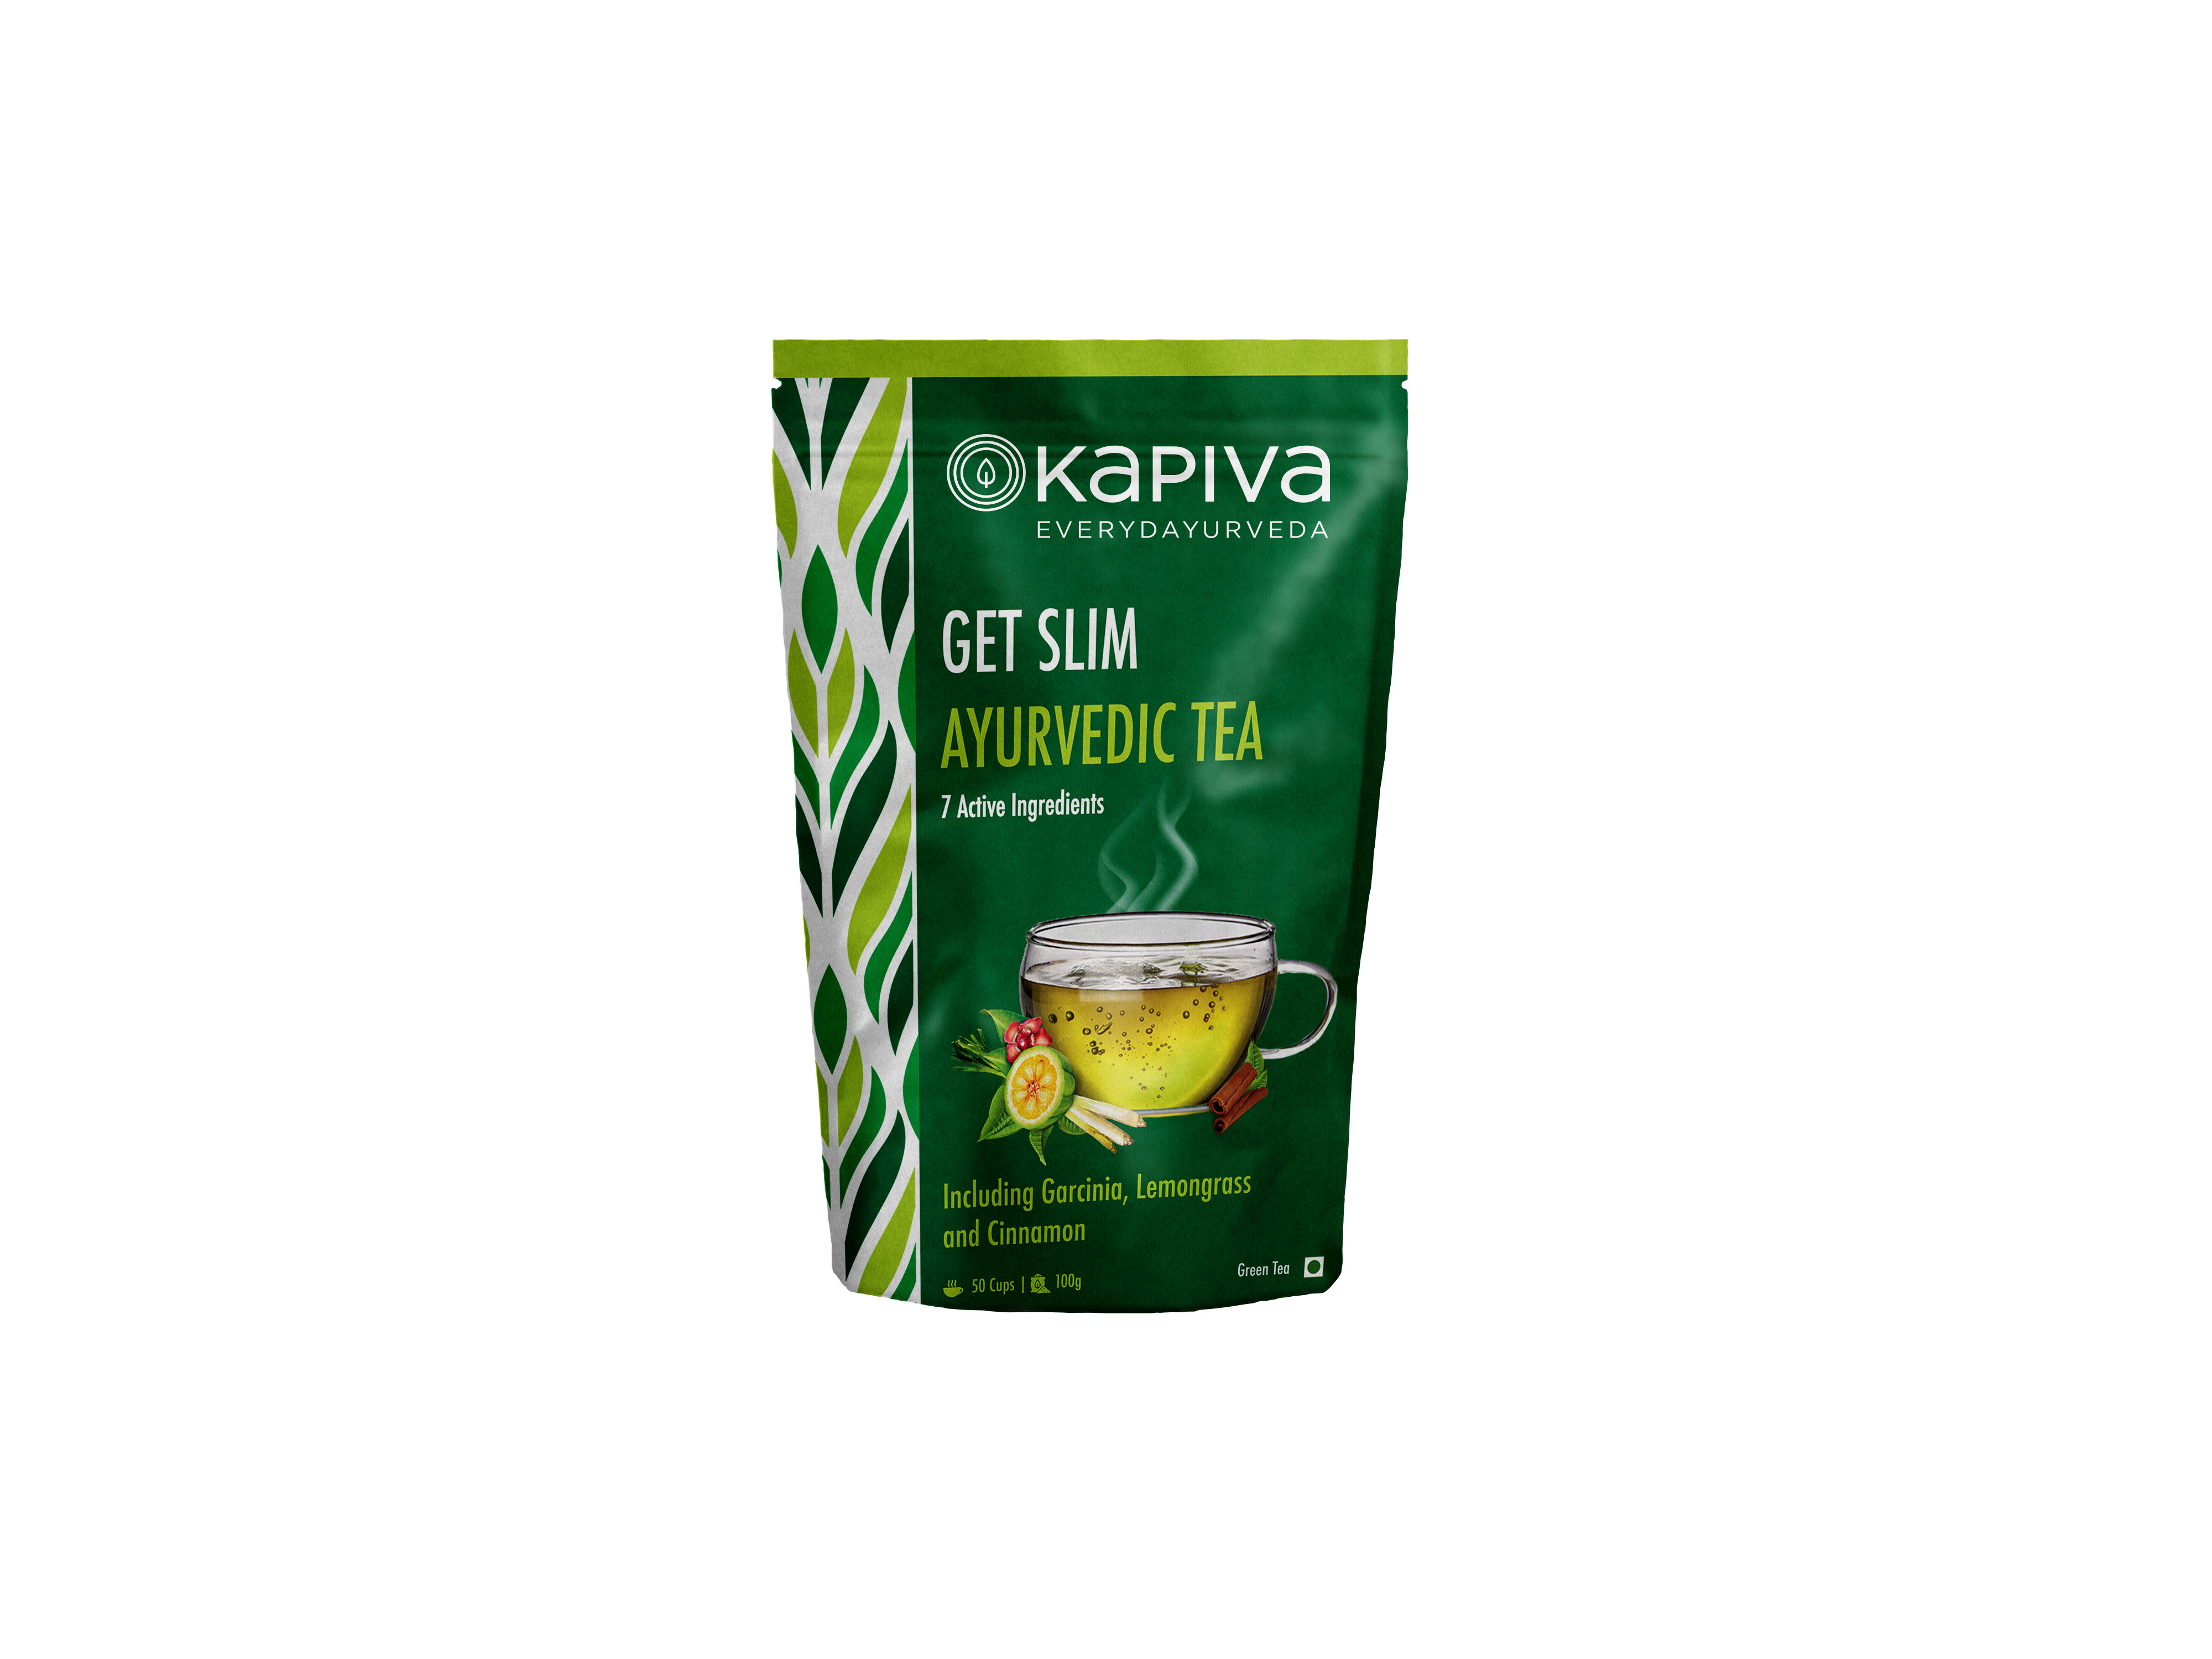 Buy Kapiva Get Slim Green Tea at Best Price Online